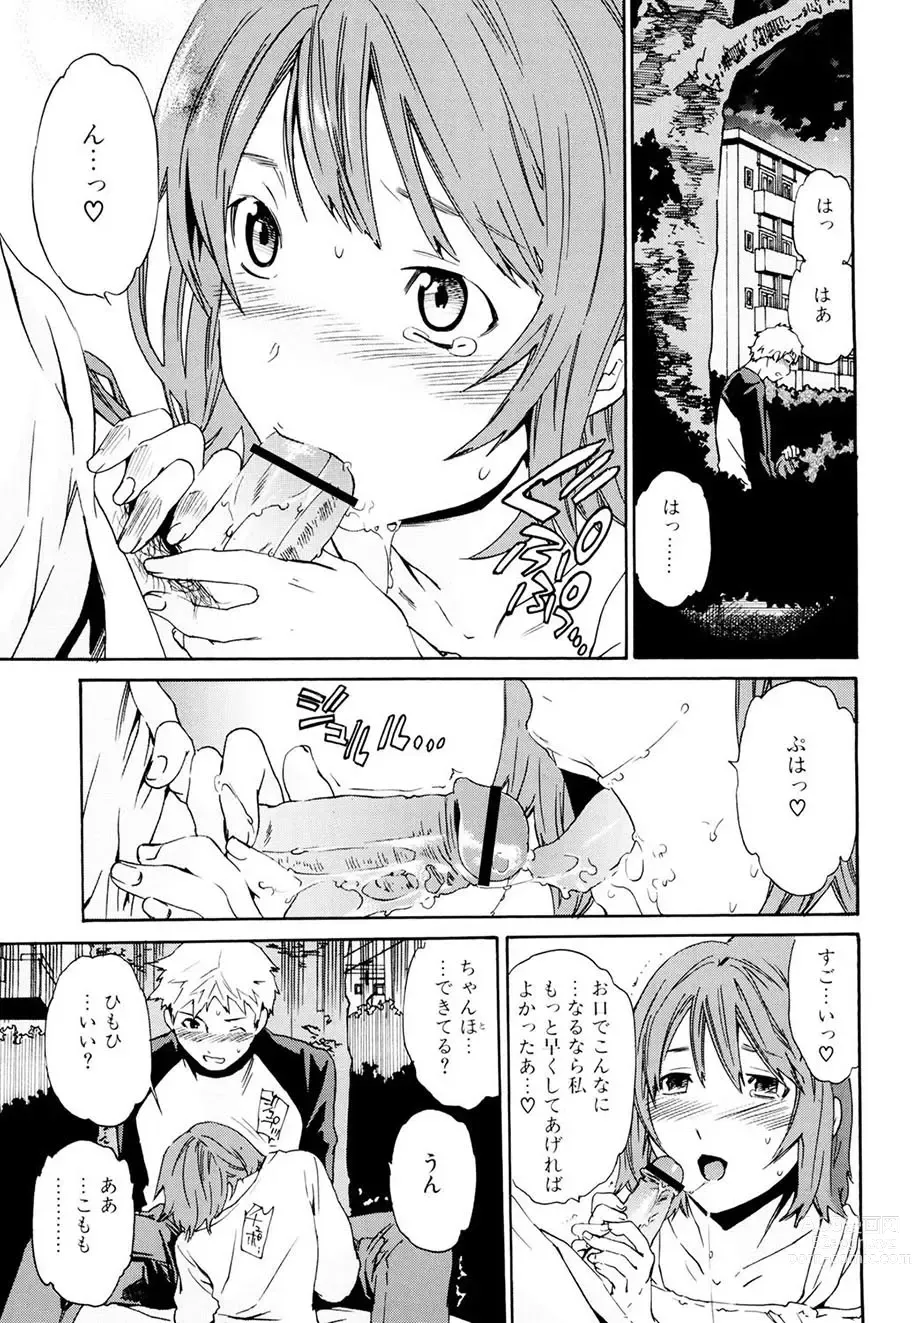 Page 16 of manga Shitai Kara Suru no